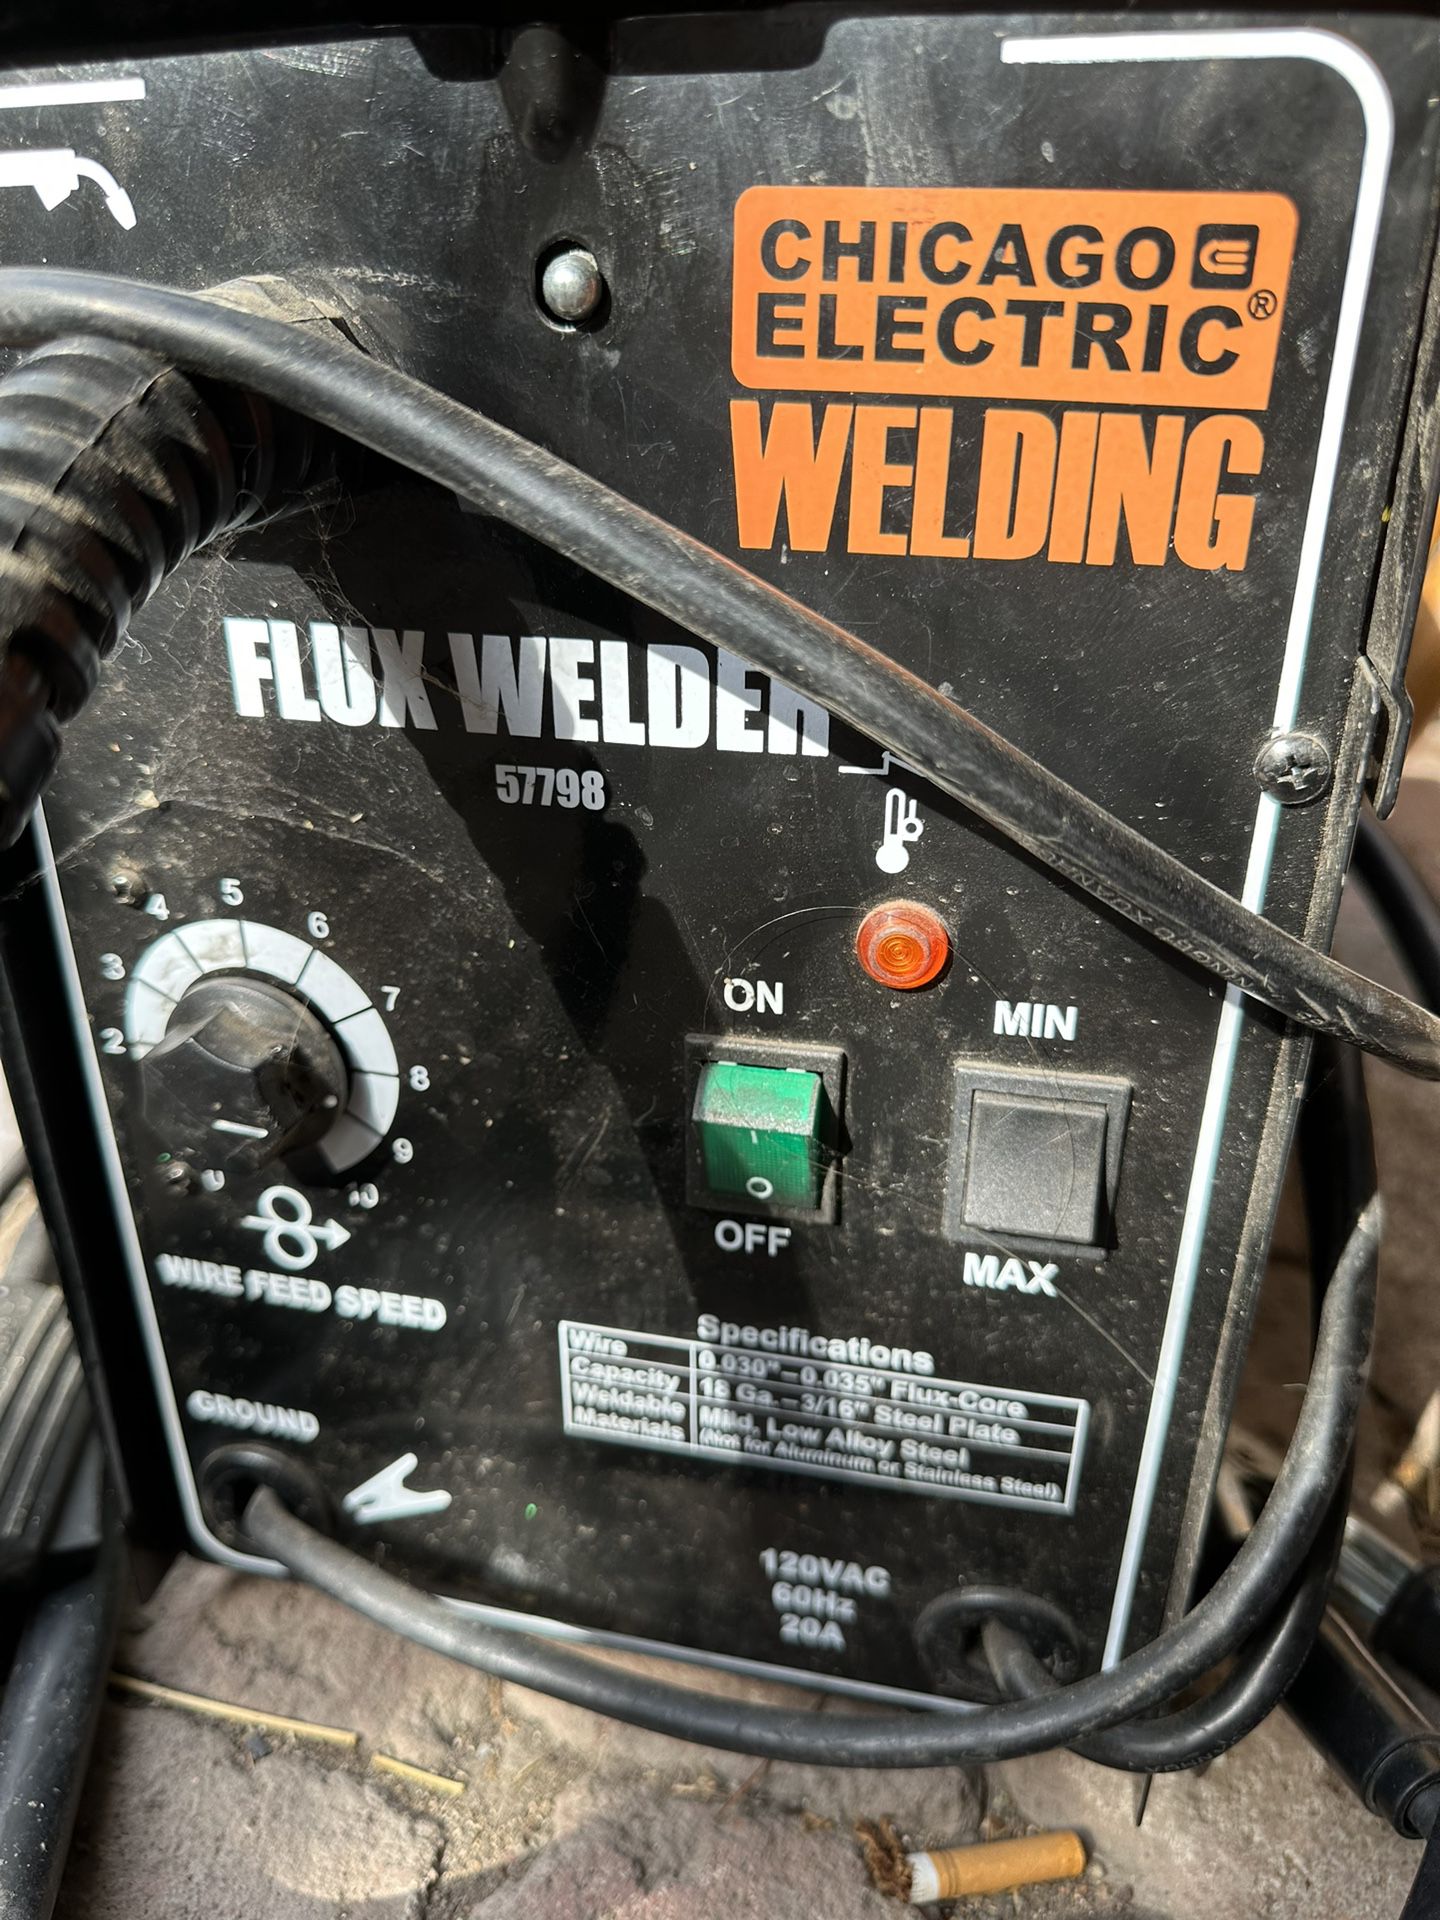 Chicago Electric Welding Flux Welder 